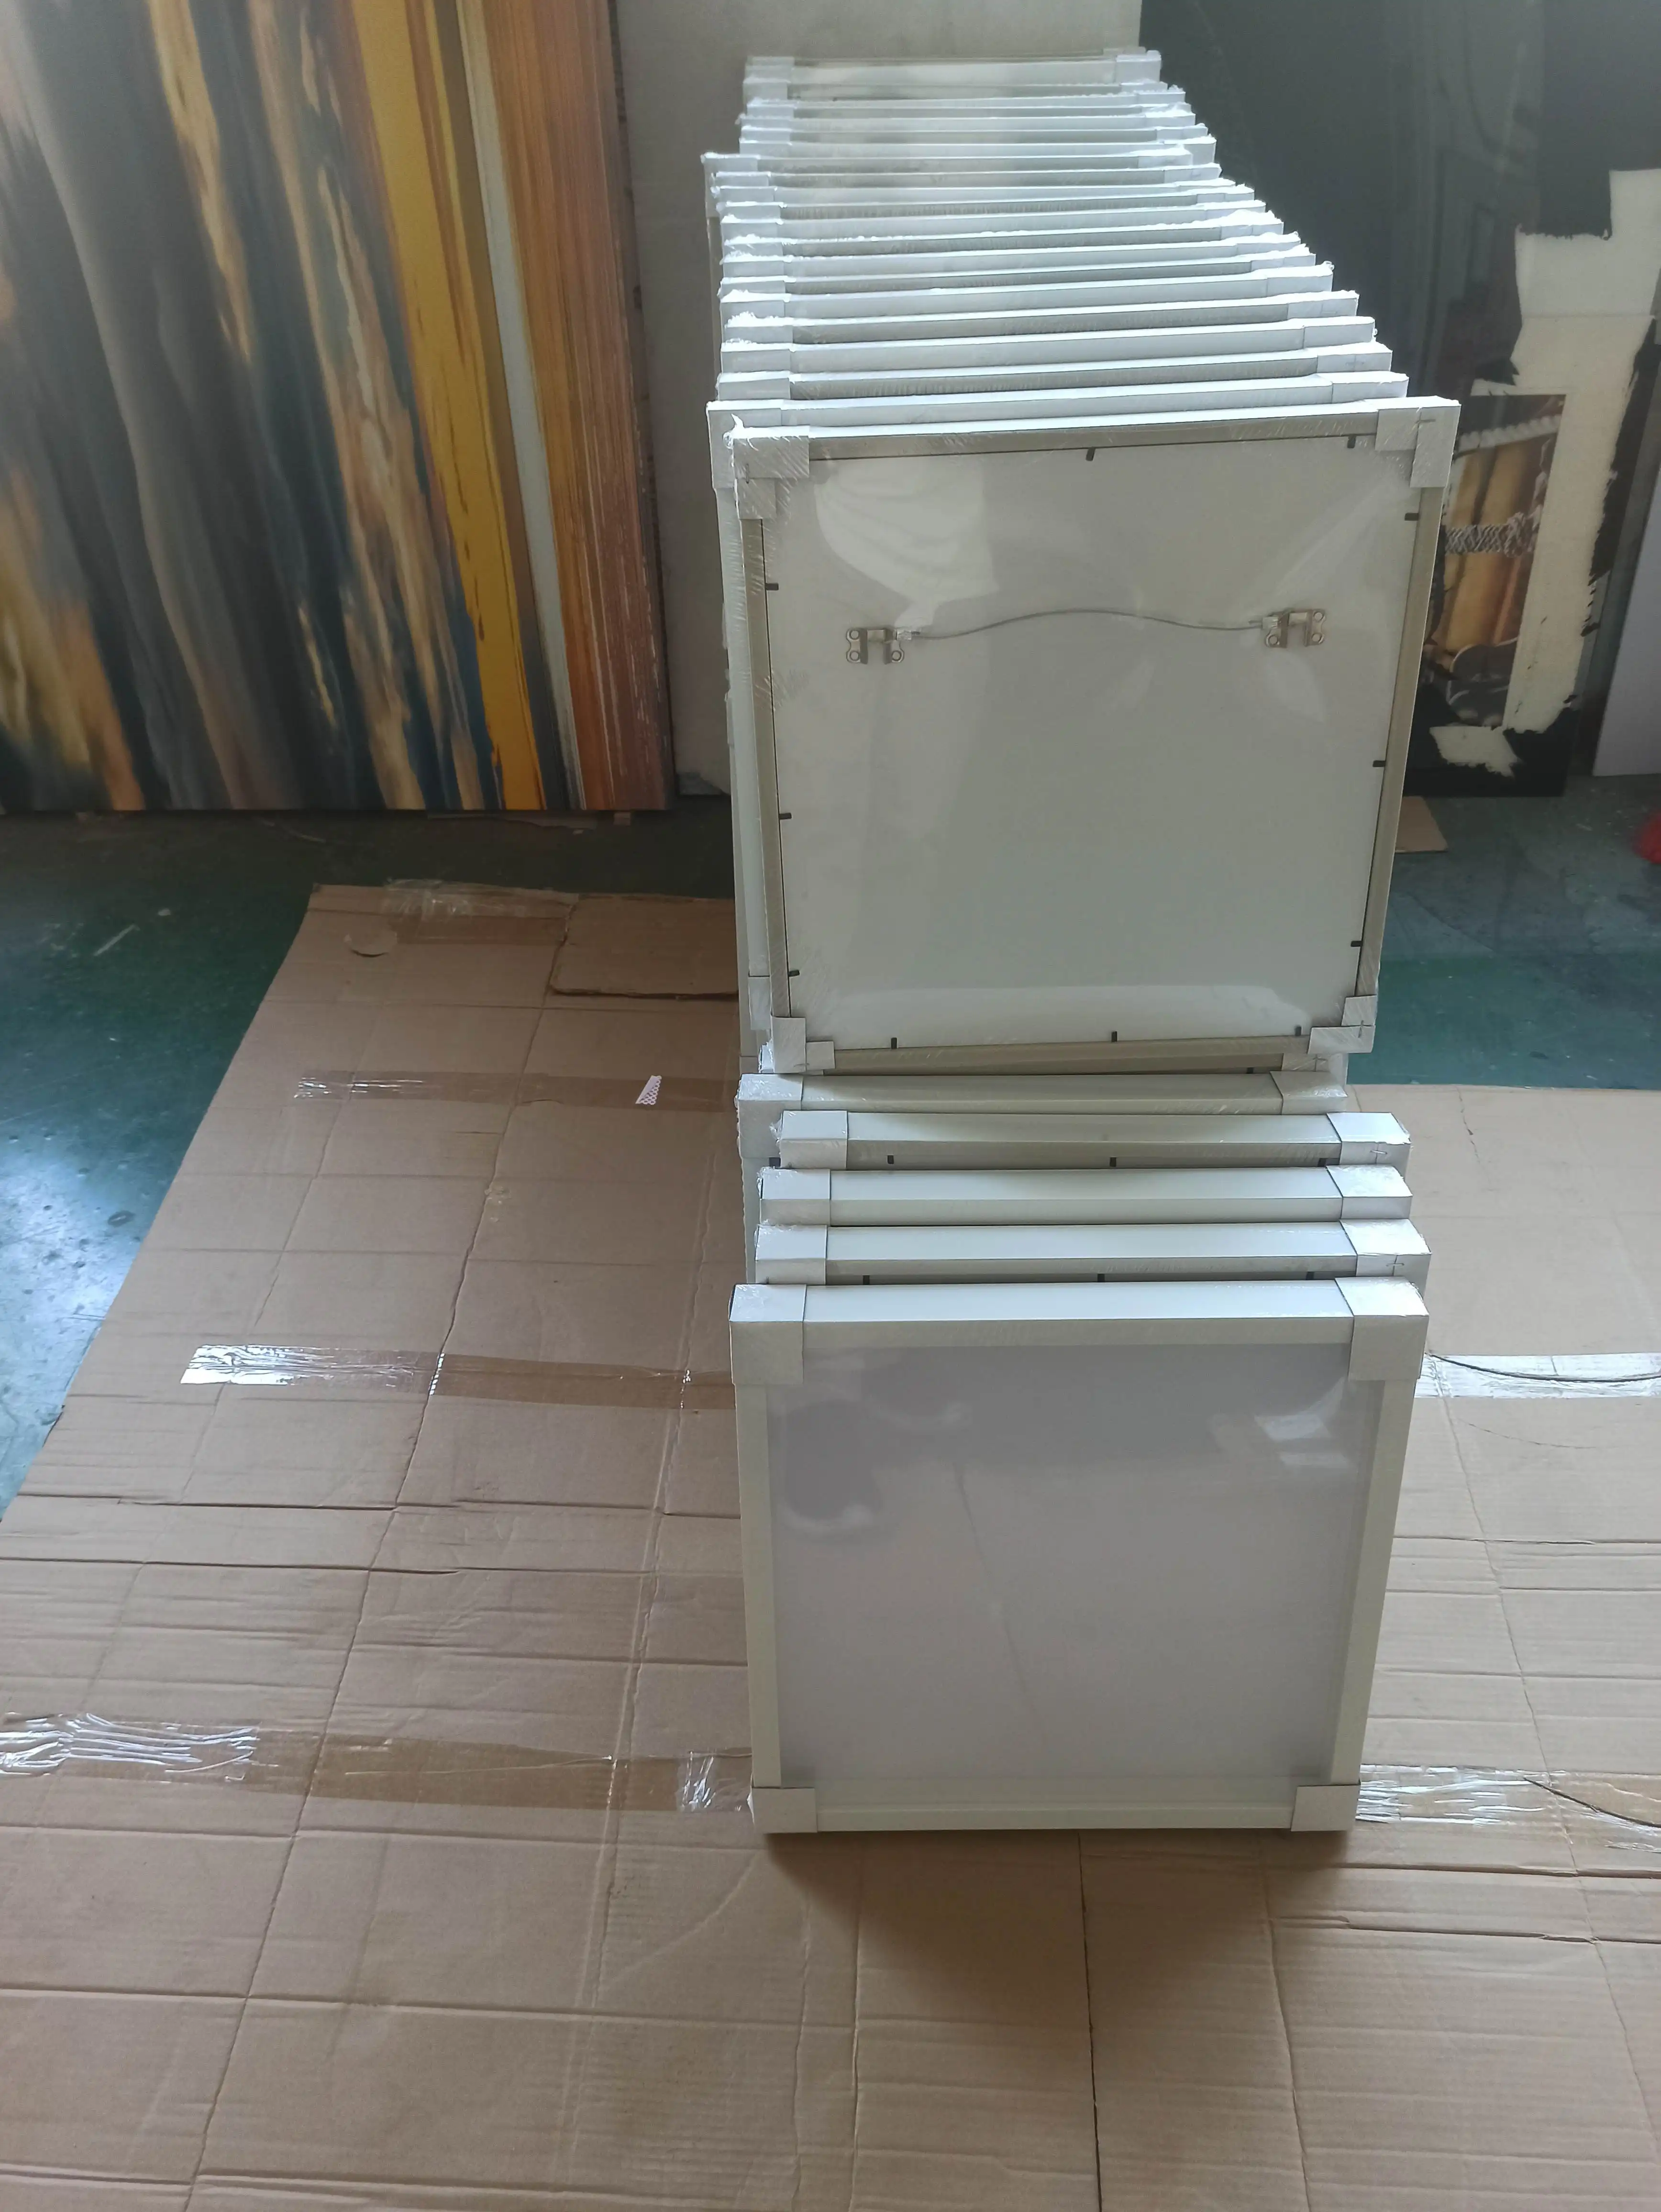 16x16 3x3 กล่องเงา 8x10 กล่องเงาดอกไม้กรอบจํานวนมากสแควร์ DIY สีขาวไม้สีโปสเตอร์กรอบรูป